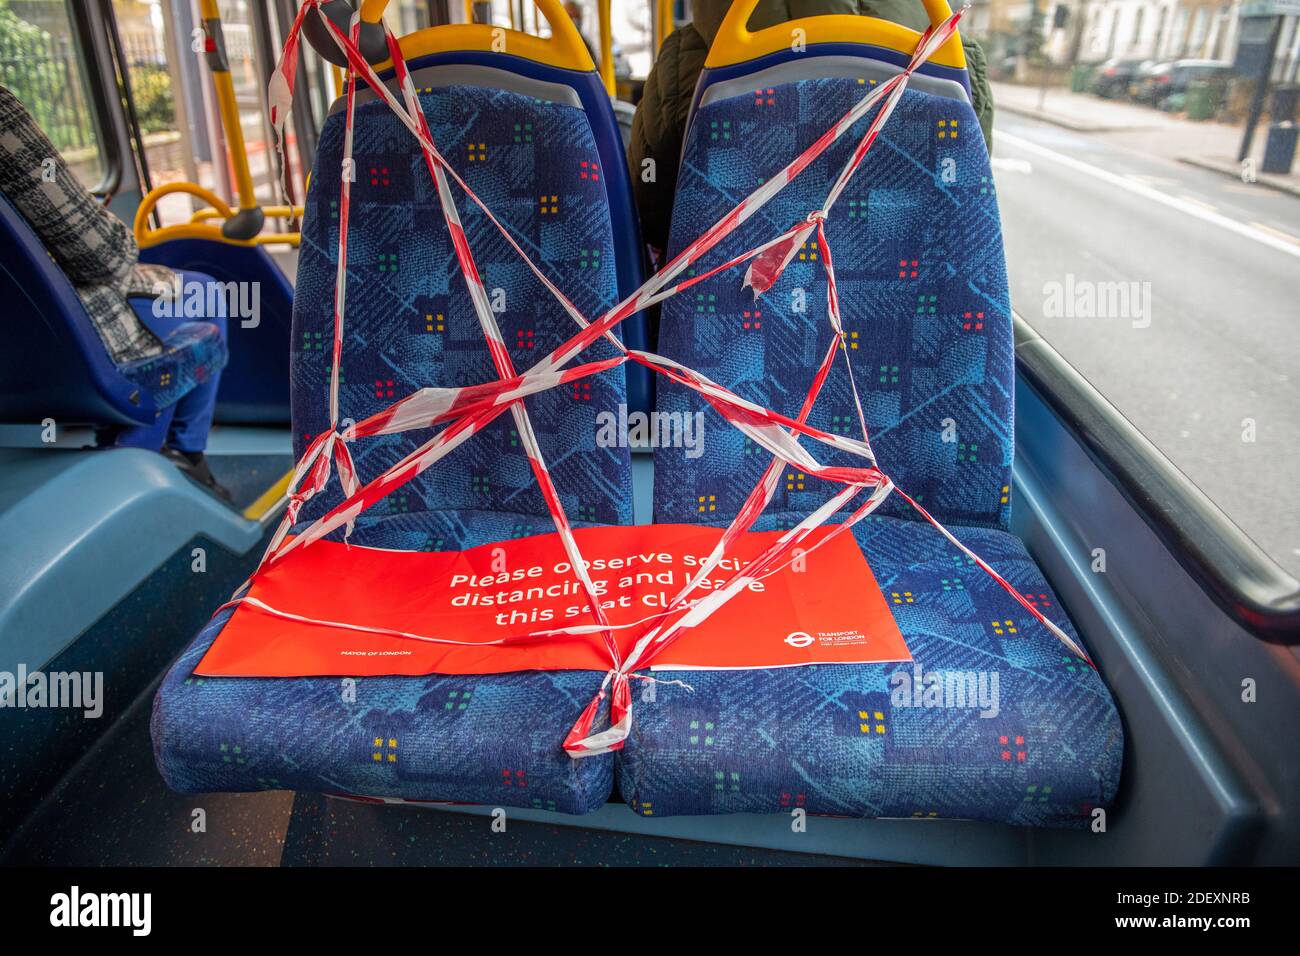 2 dicembre 2020. I posti di fronte rimangono registrati sugli autobus londinesi per mantenere la distanza sociale durante la pandemia di Covid-19. Foto Stock